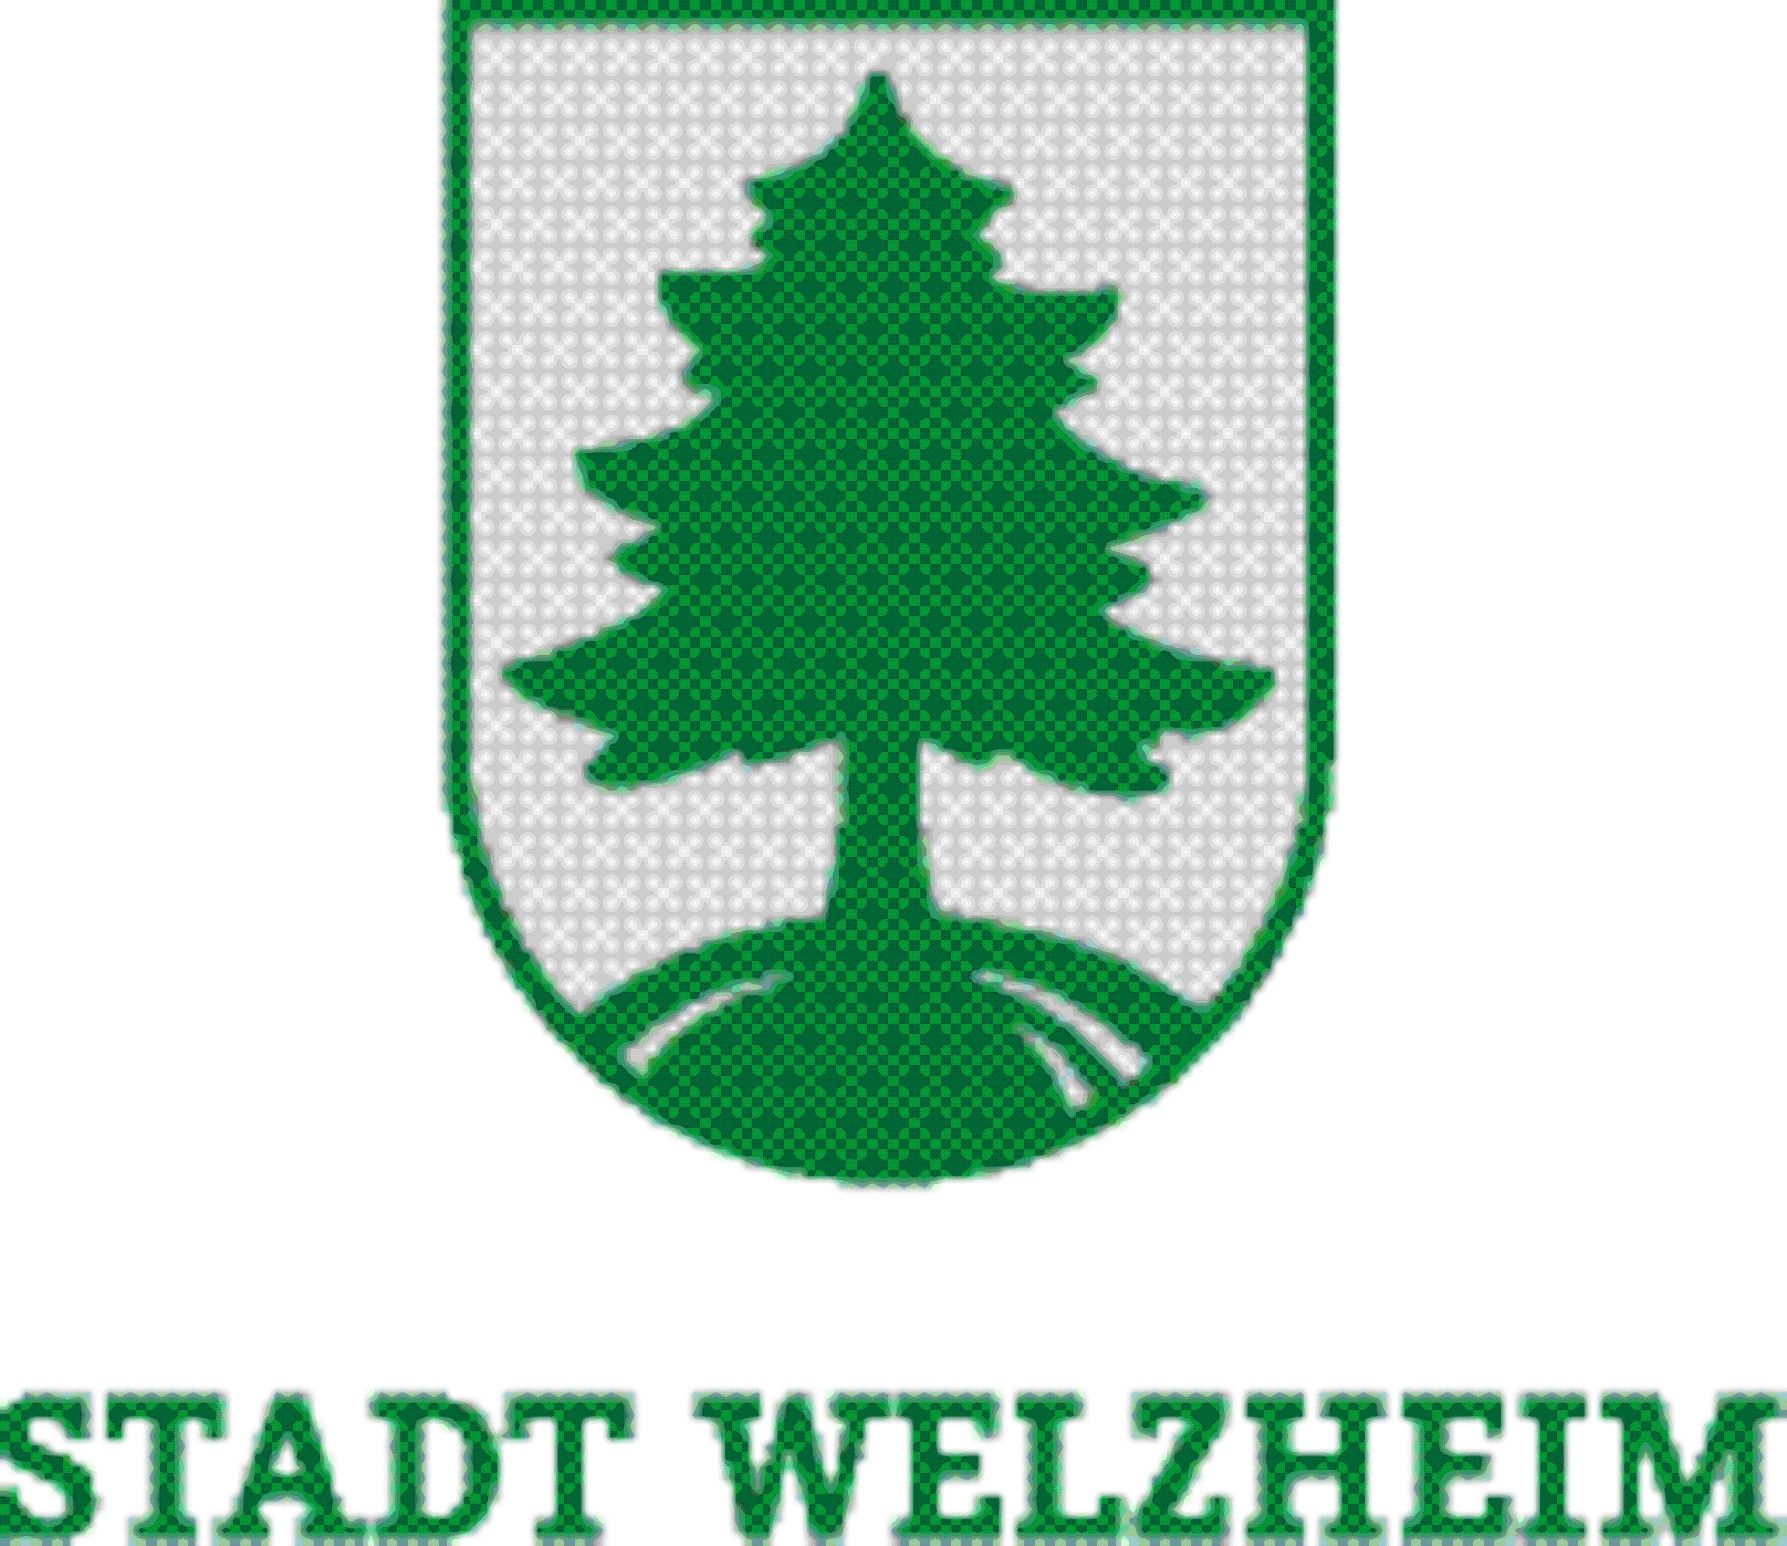 Herb Welzheim